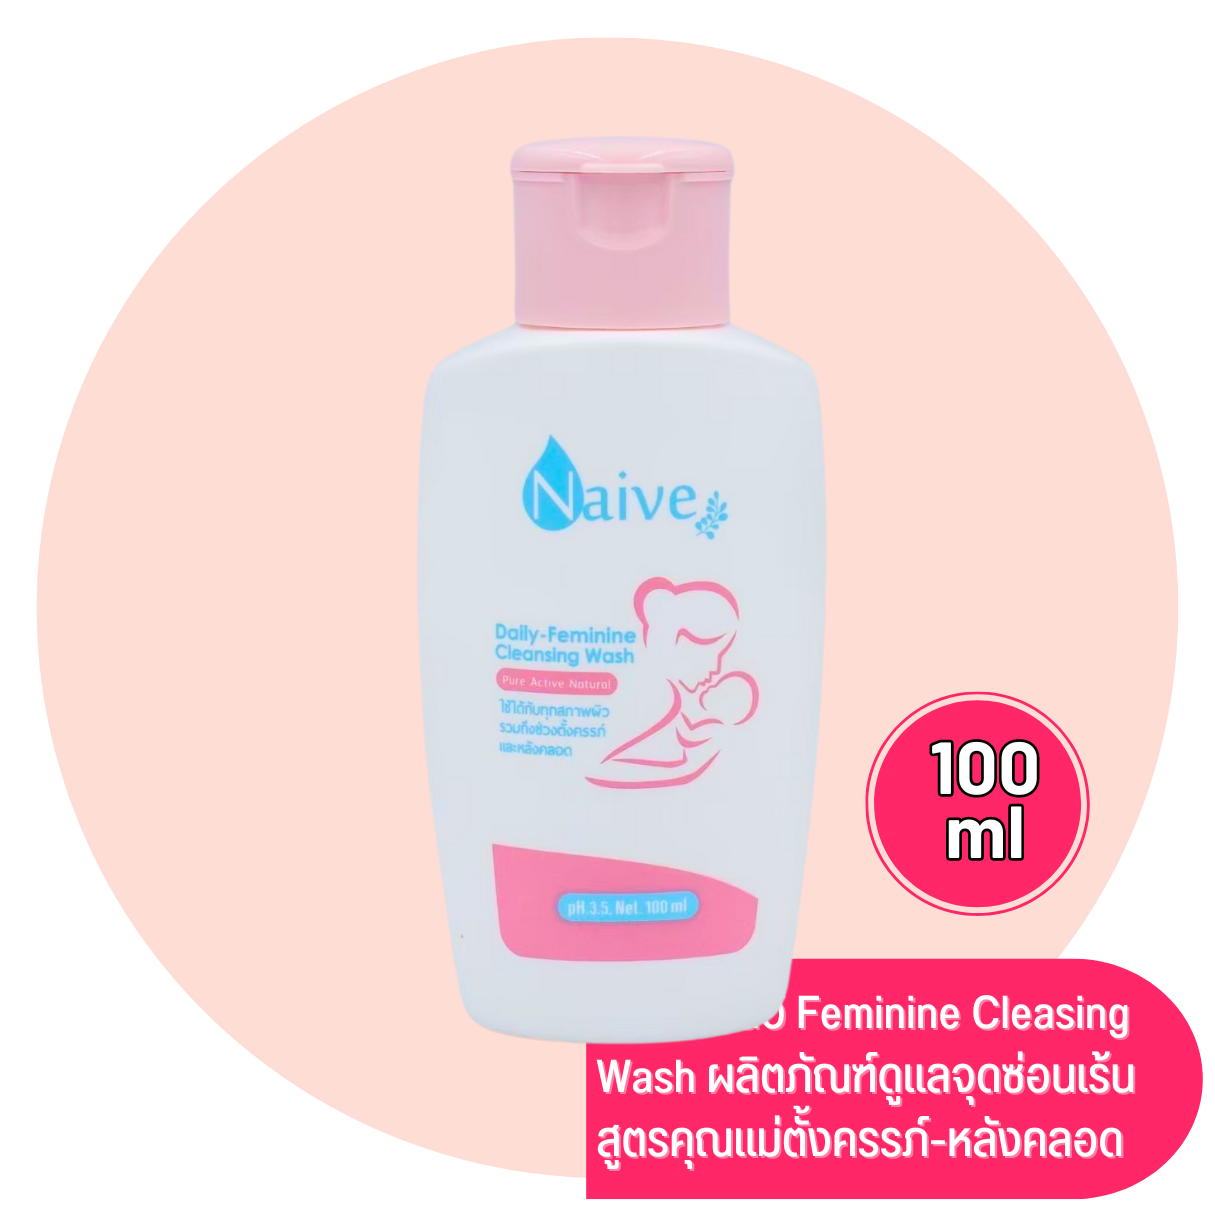 นาอีฟ Naive Daily-Feminine Cleansing Wash 100ml สูตรคุณแม่ตั้งครรภ์หลังคลอด ล้างจุดซ่อนเร้น ลดตกขาว